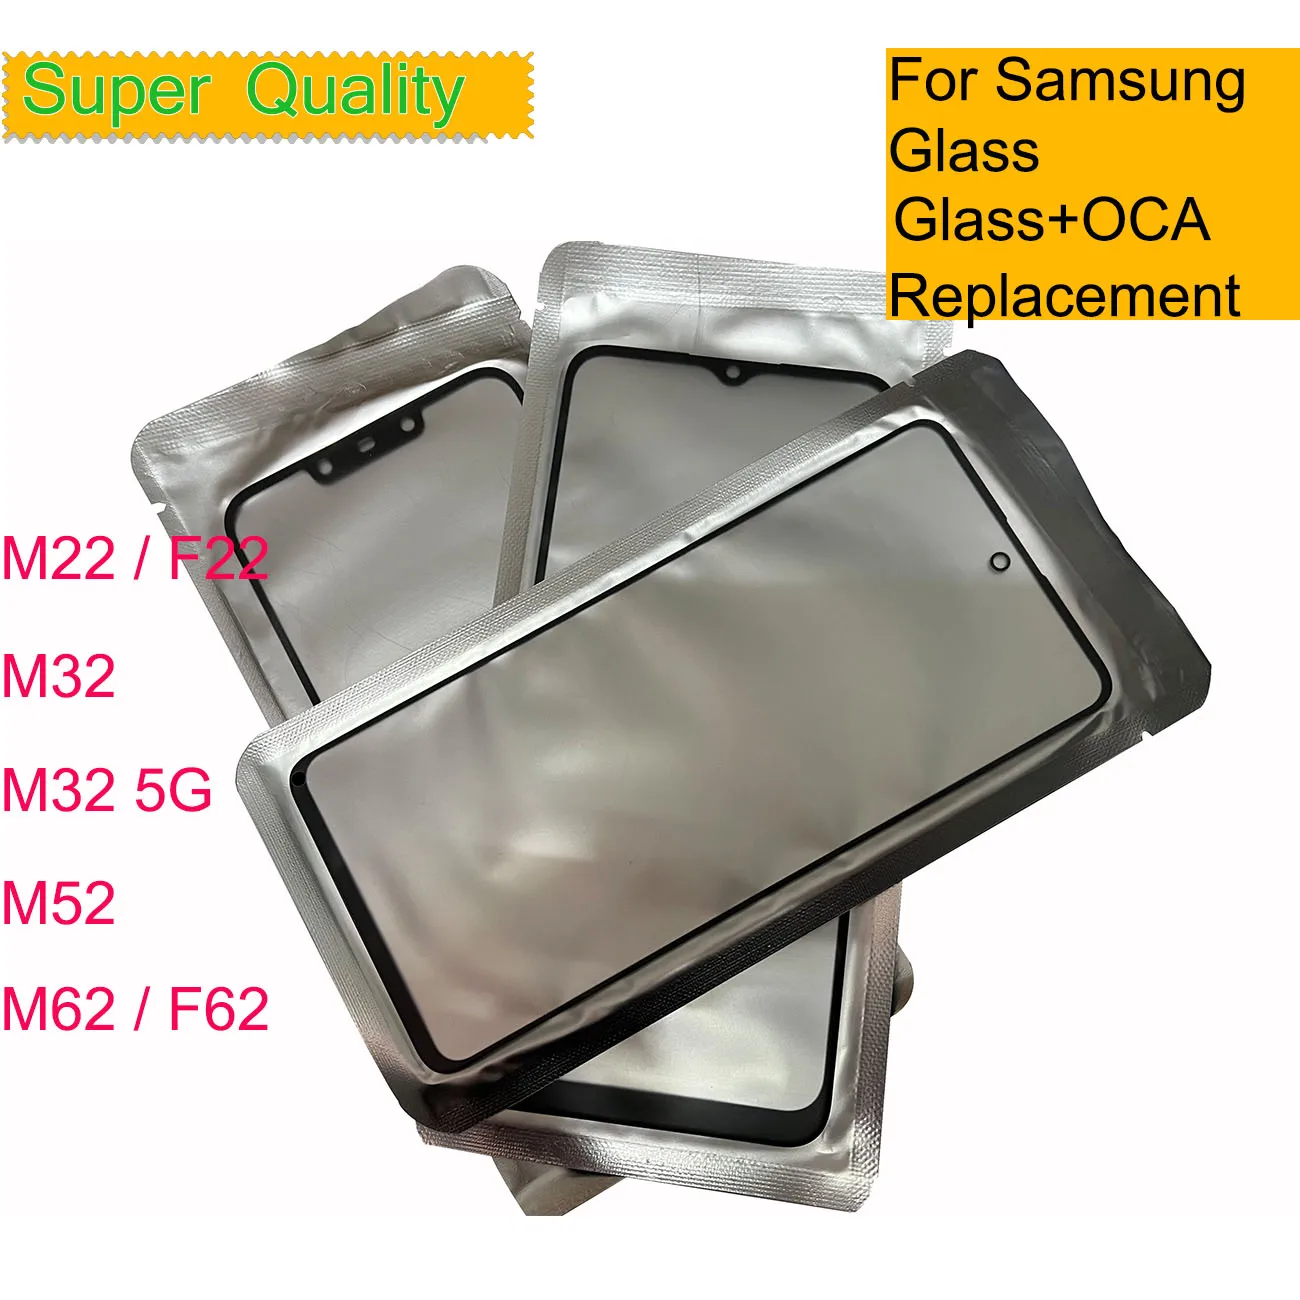 10 шт./лот Для Samsung Galaxy M22 F22 M32 5G M52 M62 F62 Панель Сенсорного Экрана Передняя Внешняя Стеклянная Линза ЖК-Стекло С ОСА